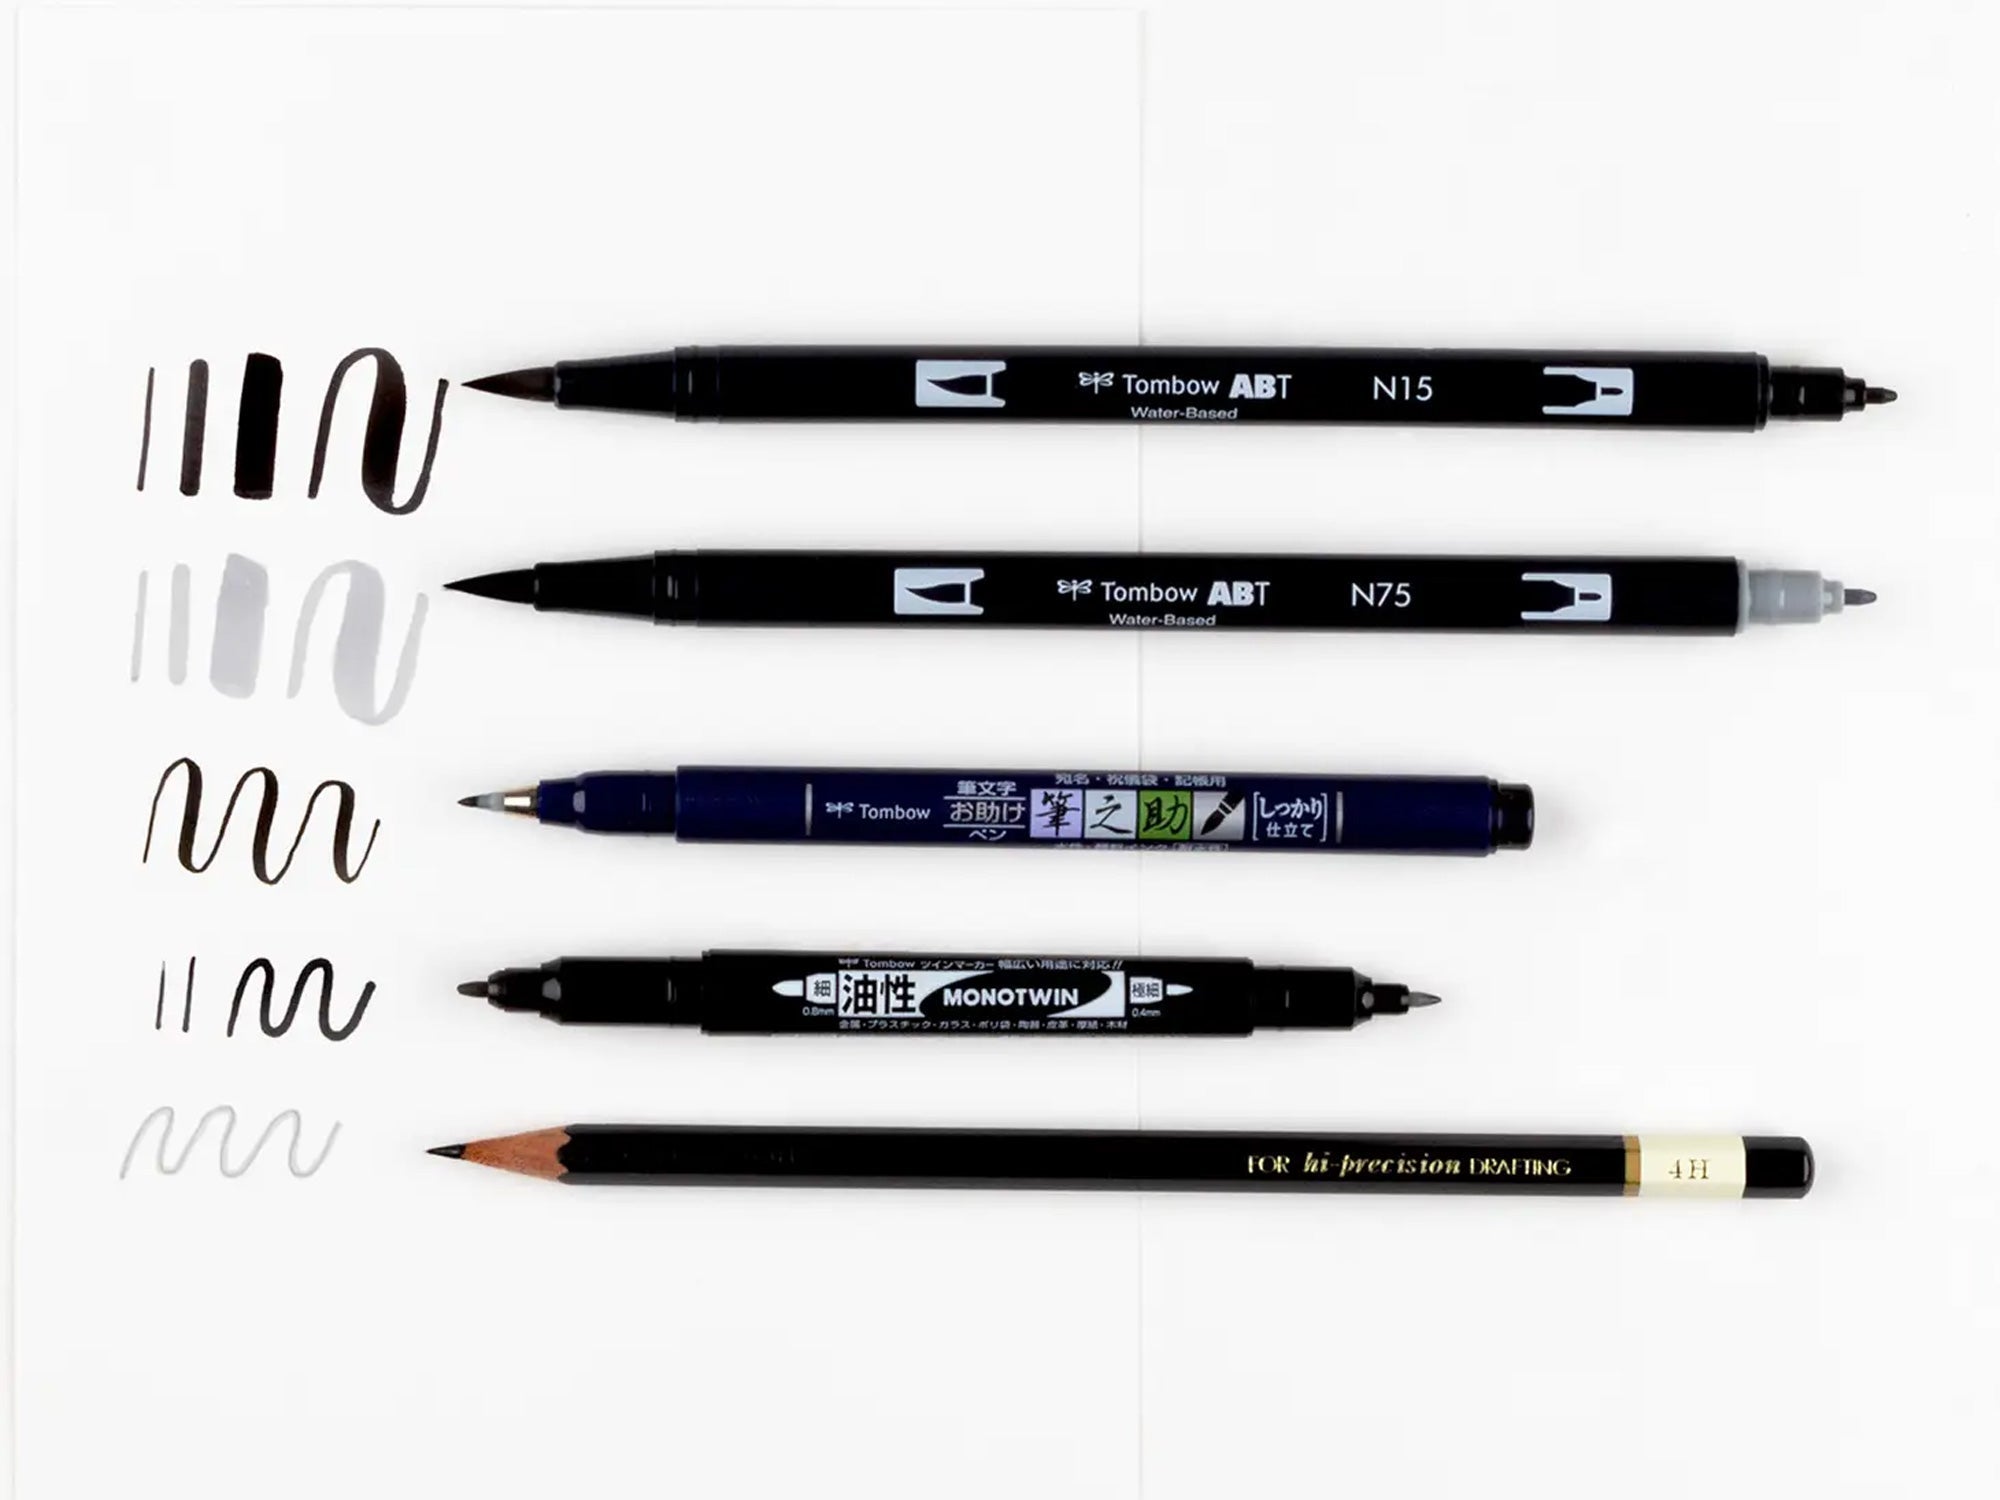 Pen Store Get started - Sketch set!